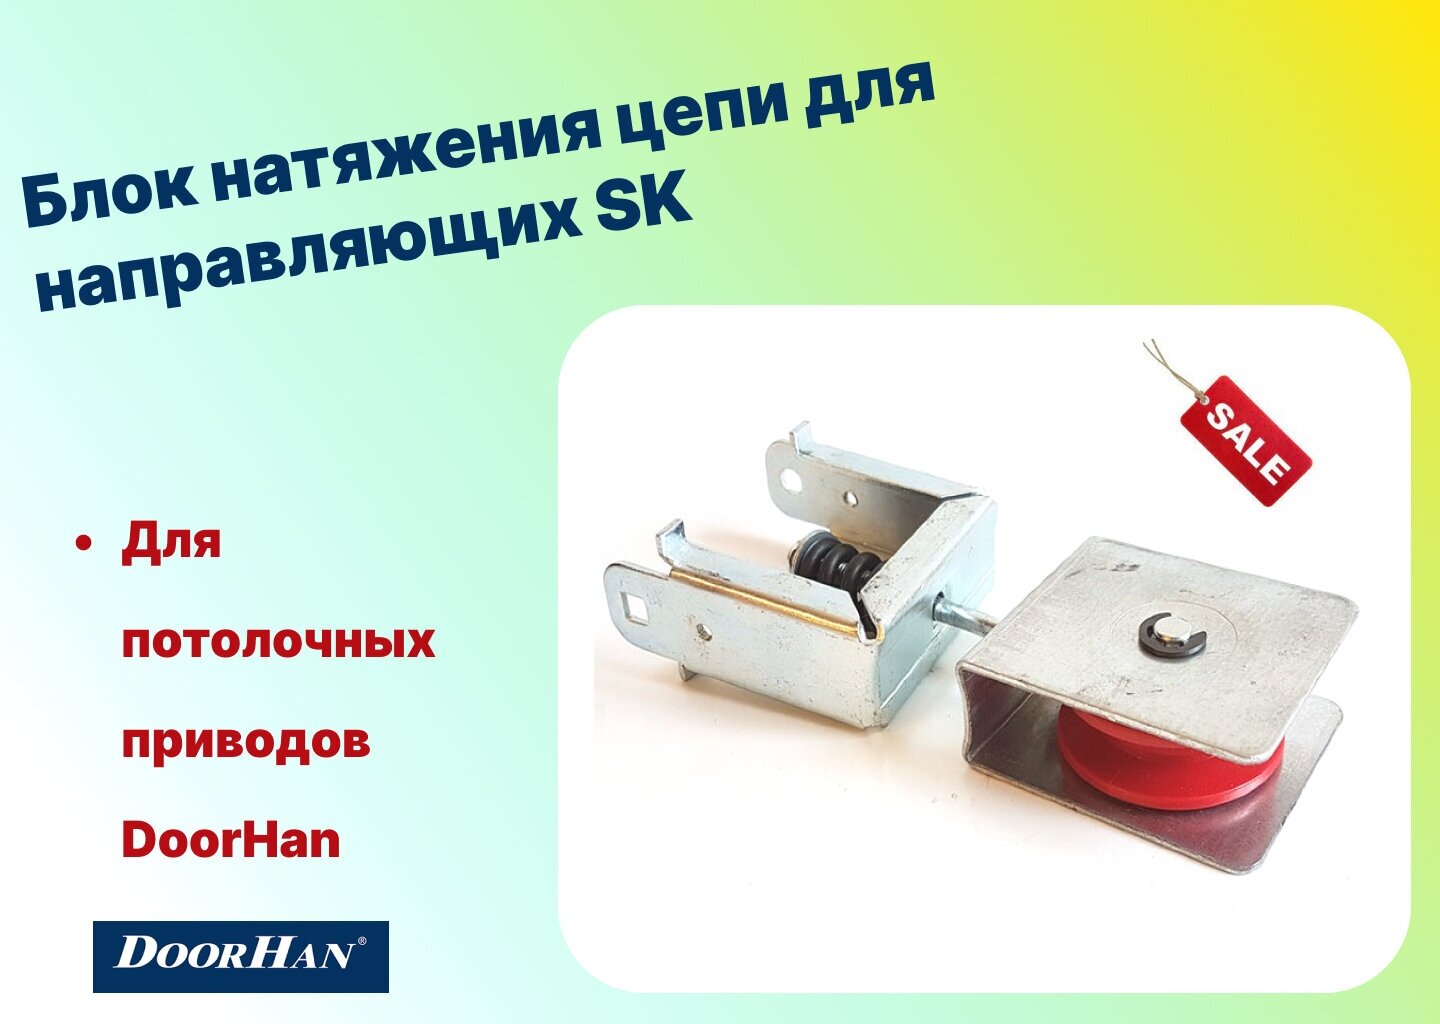 Блок натяжения цепи для направляющих SK-3000/3300/3600/4200/4600, DHG011 (DoorHan)